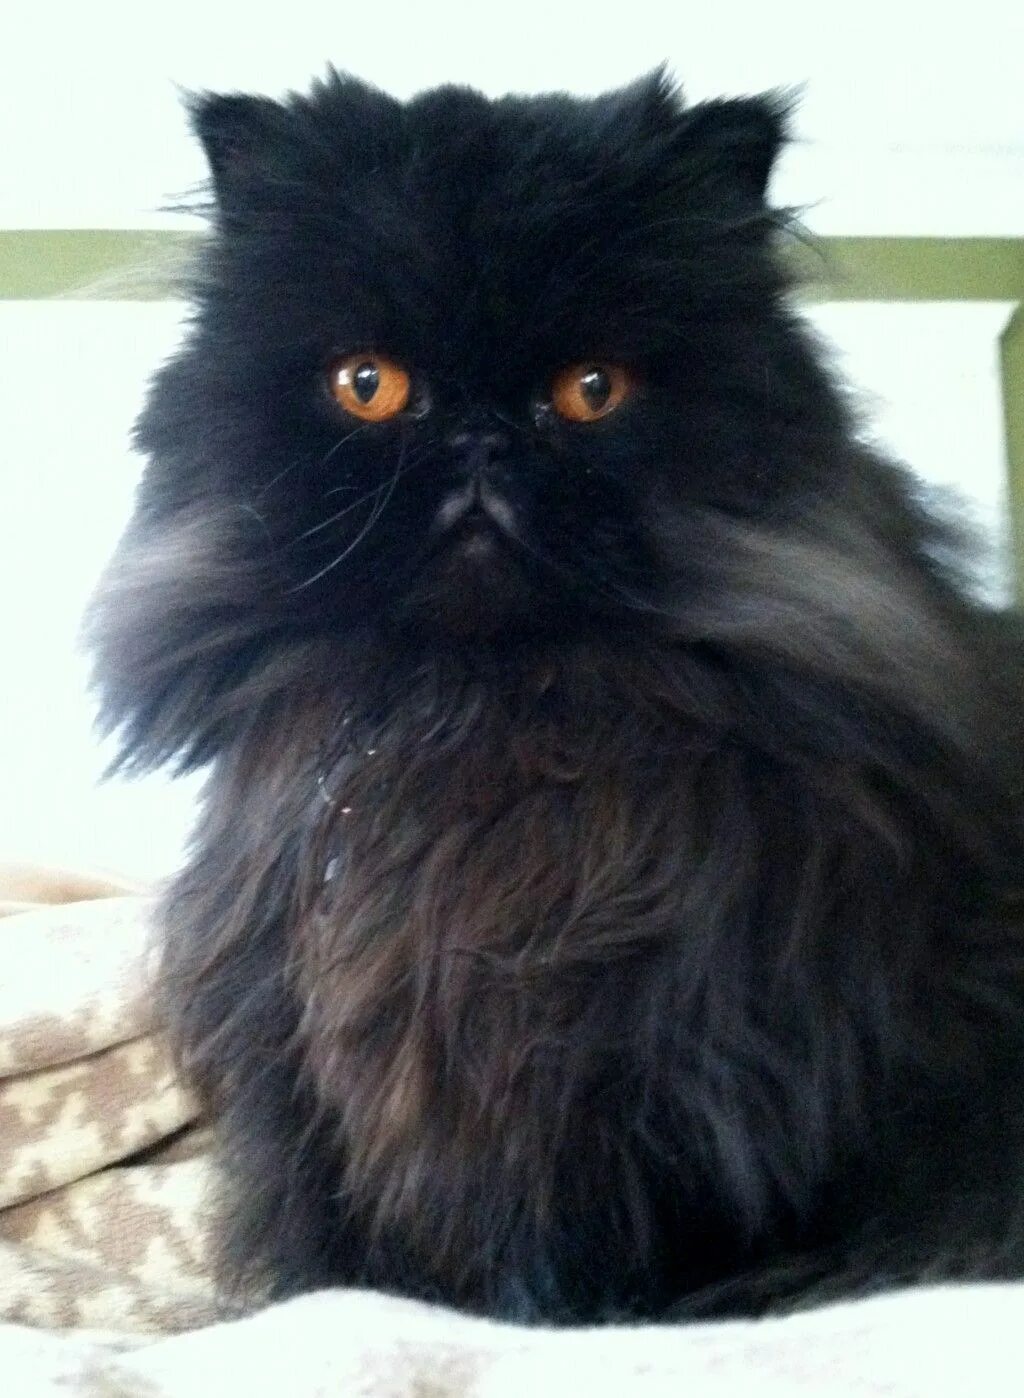 Экзот черный длинношерстный. Персидский длинношерстный кот. Персидский экзот длинношерстный черный. Кот экзот длинношерстный черный. От персидской кошки с шоколадной окраской